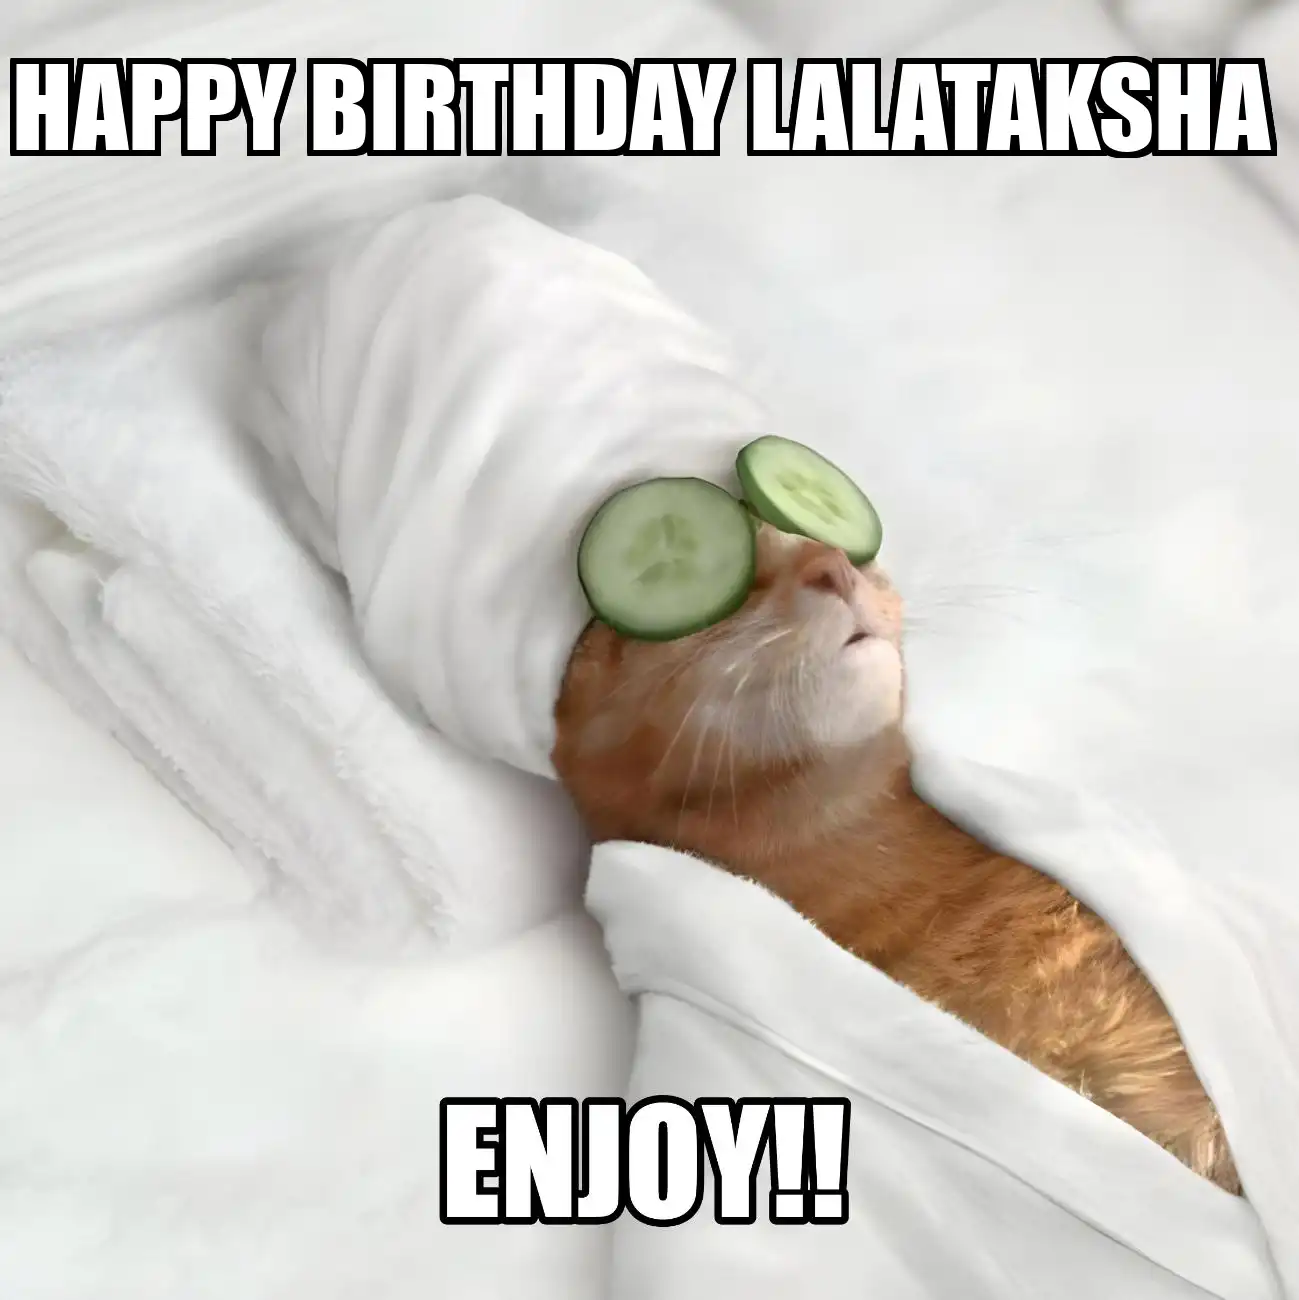 Happy Birthday Lalataksha Enjoy Cat Meme